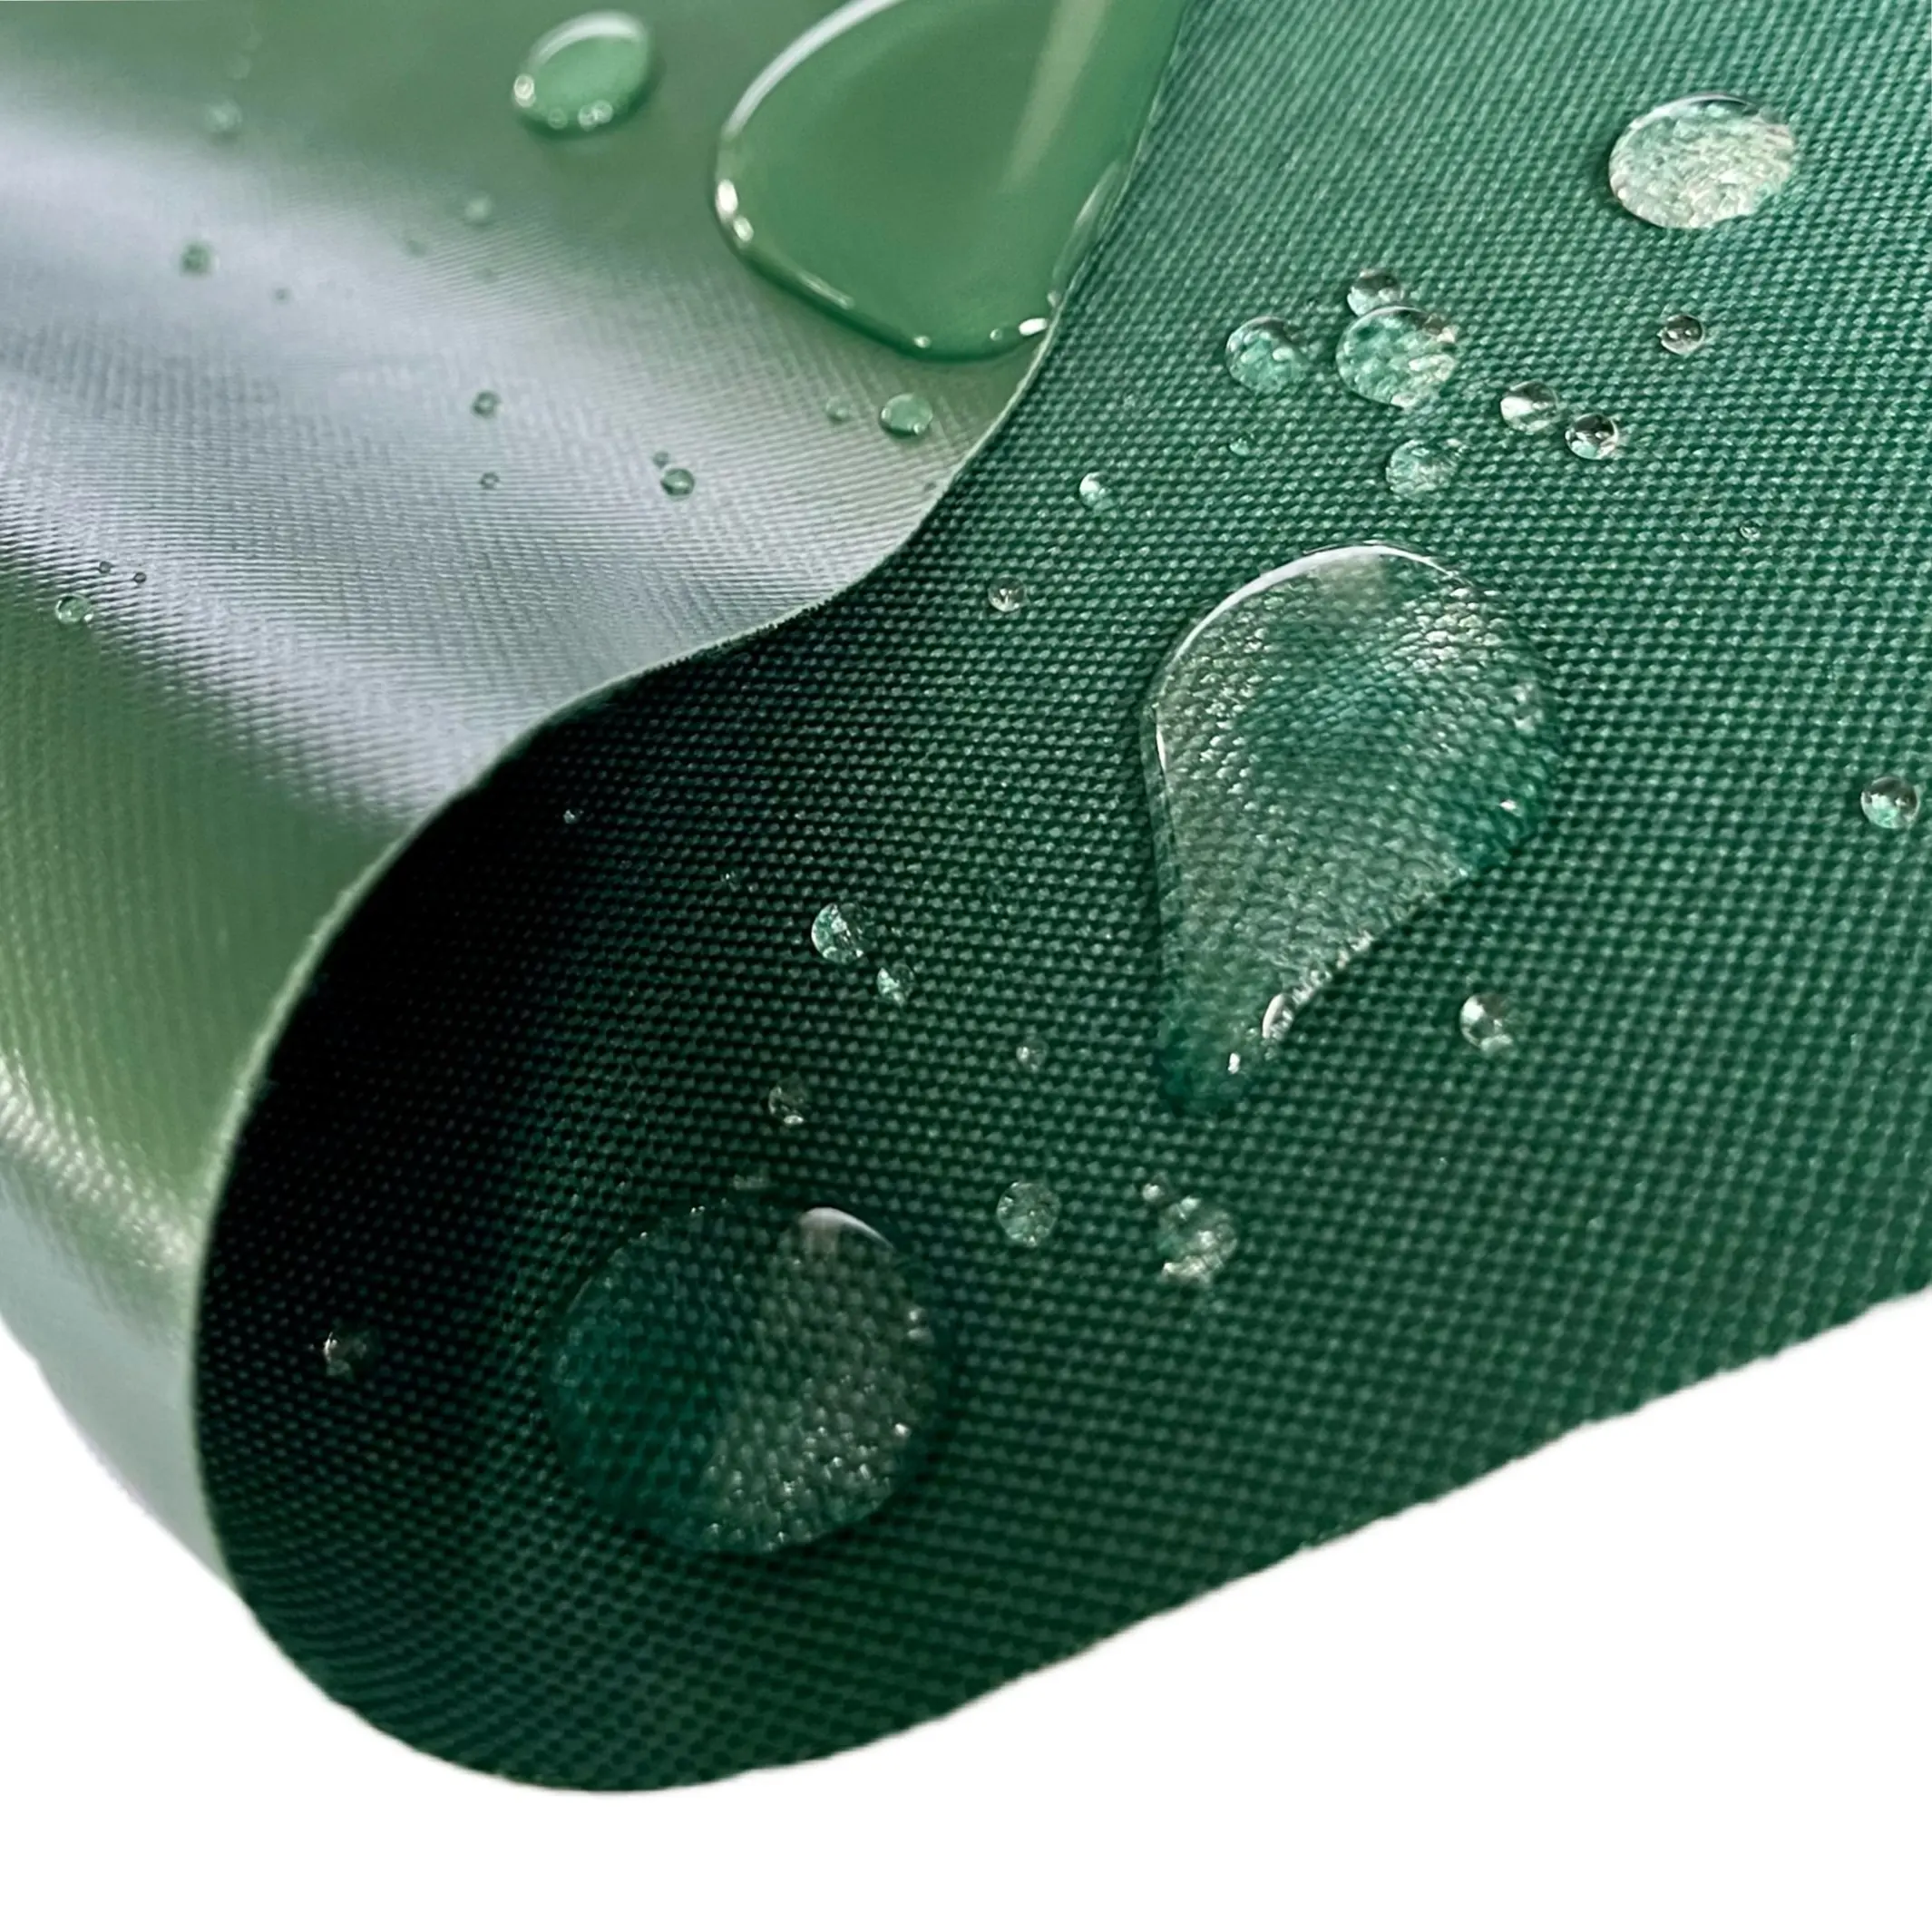 Impermeable 300D/600D poliéster Oxford tela GRS Rpet poliéster Oxford tela para bolsas con revestimiento de PVC/PU